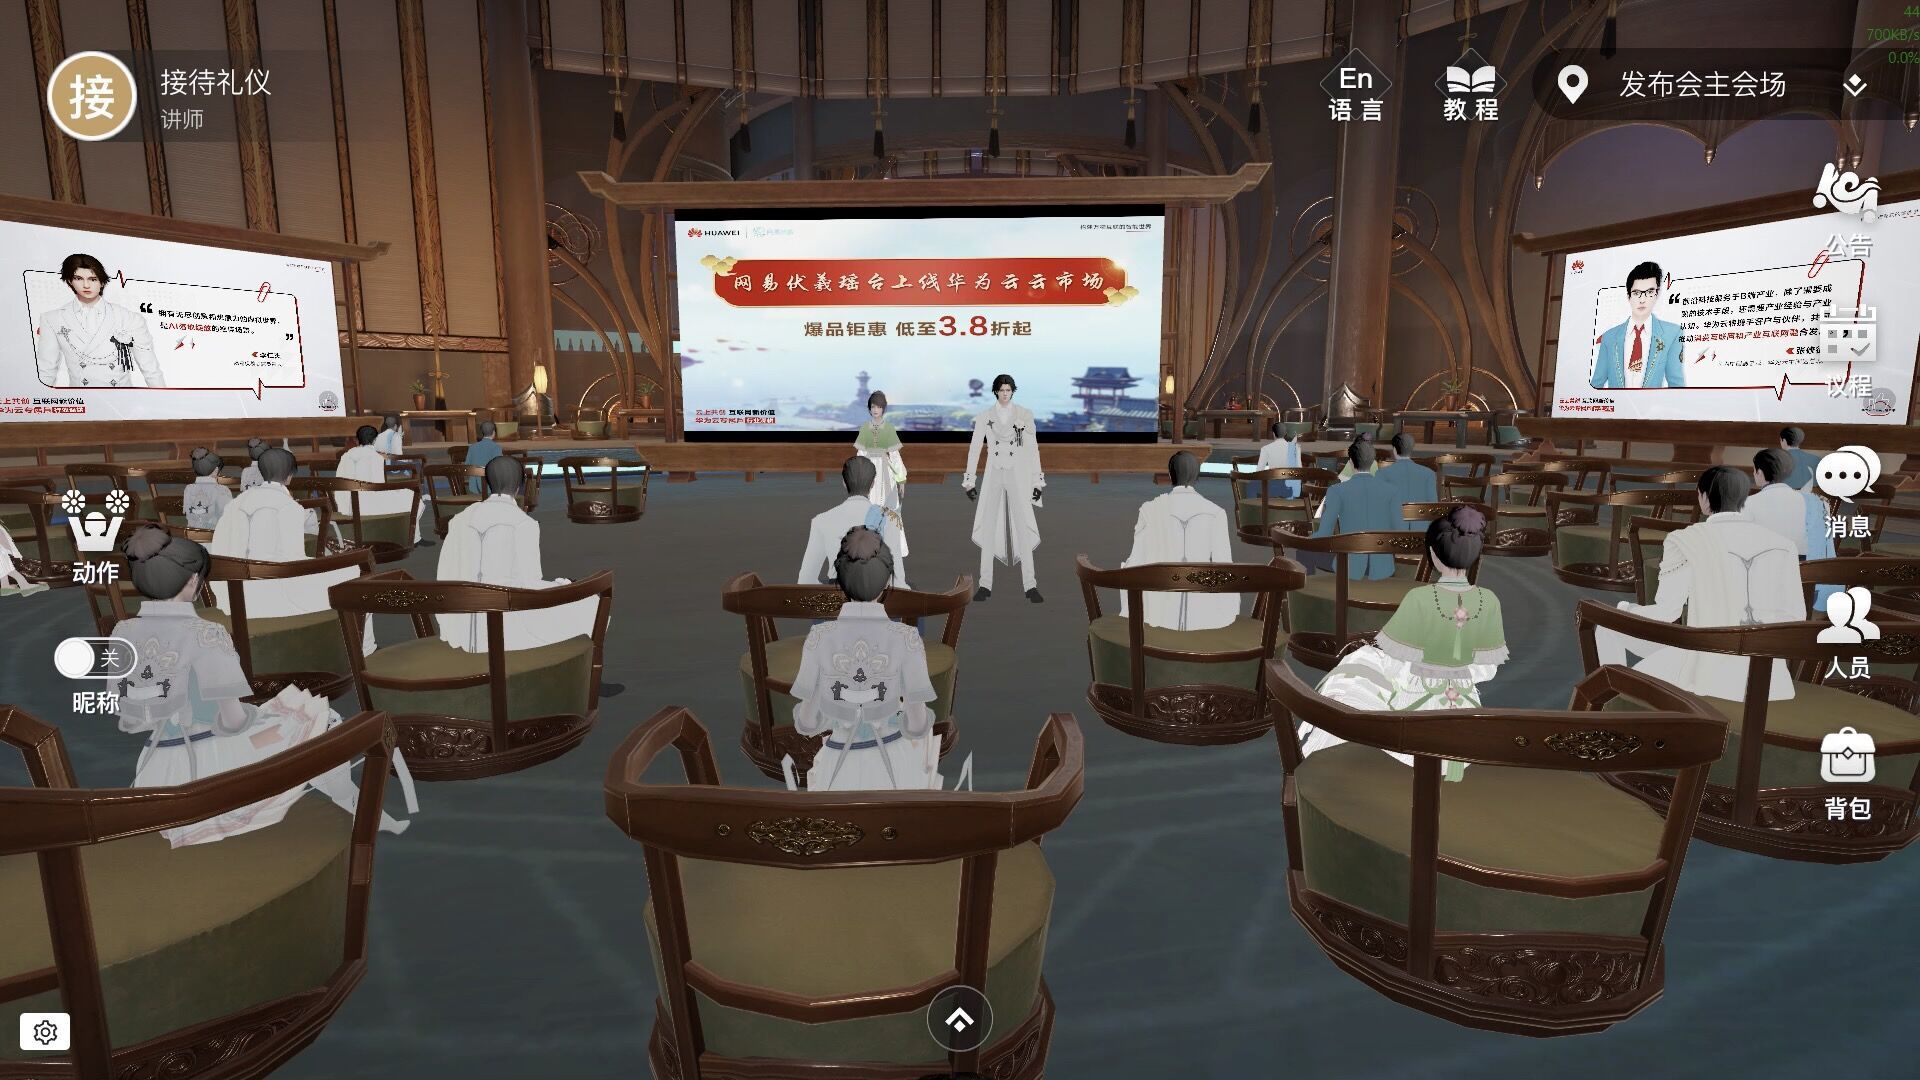 图片展示了一个虚拟现实场景，里面有多个人物头戴VR设备，坐在类似会议室的环境中，前方有演讲者和大屏幕。